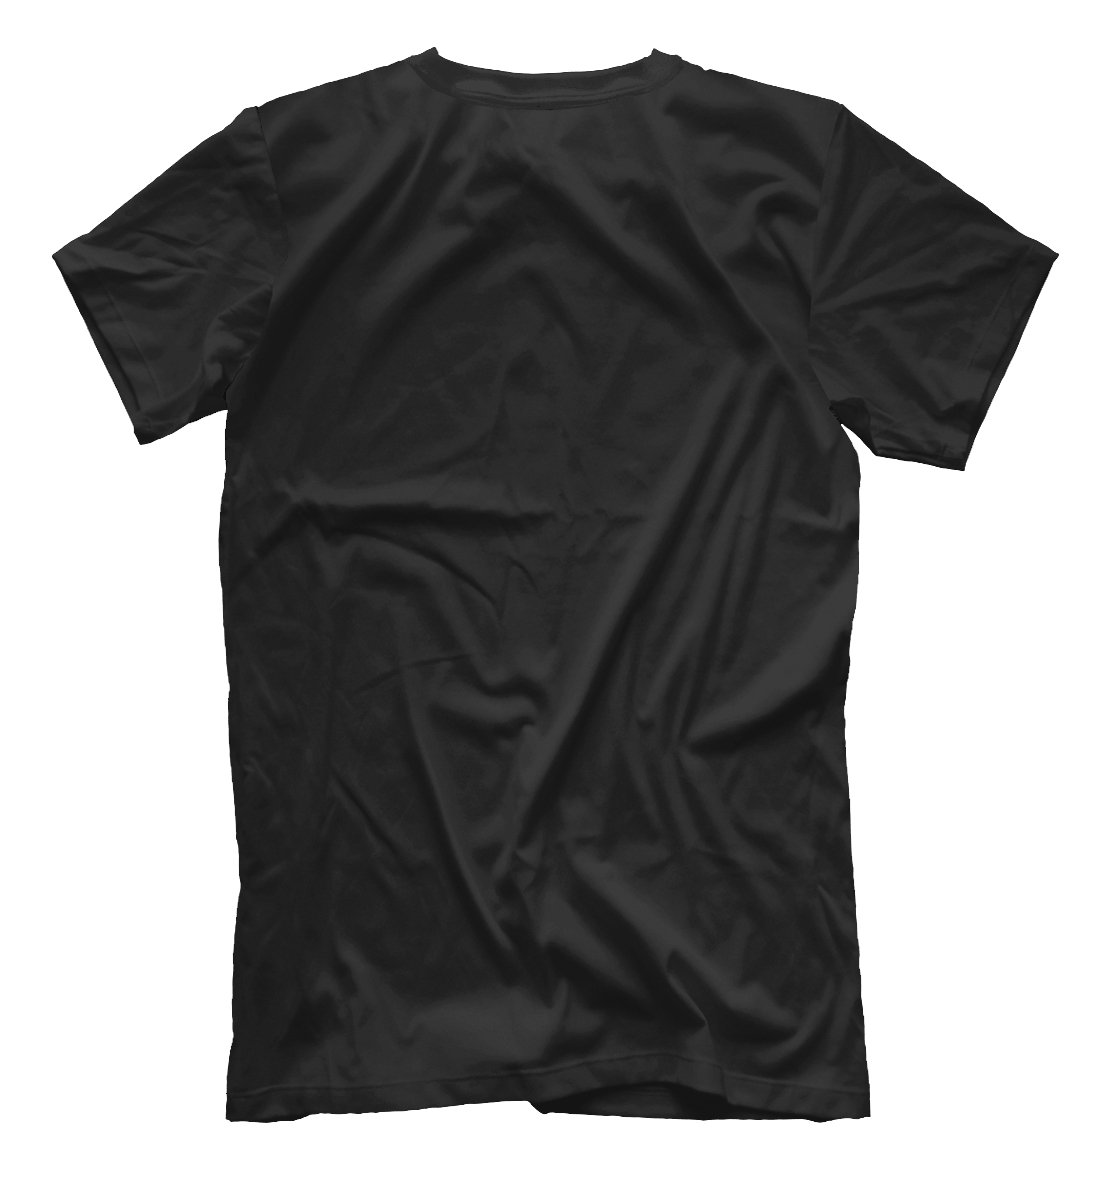 Мужская футболка с принтом 1981 - Limited Edition  - фото 2-спина